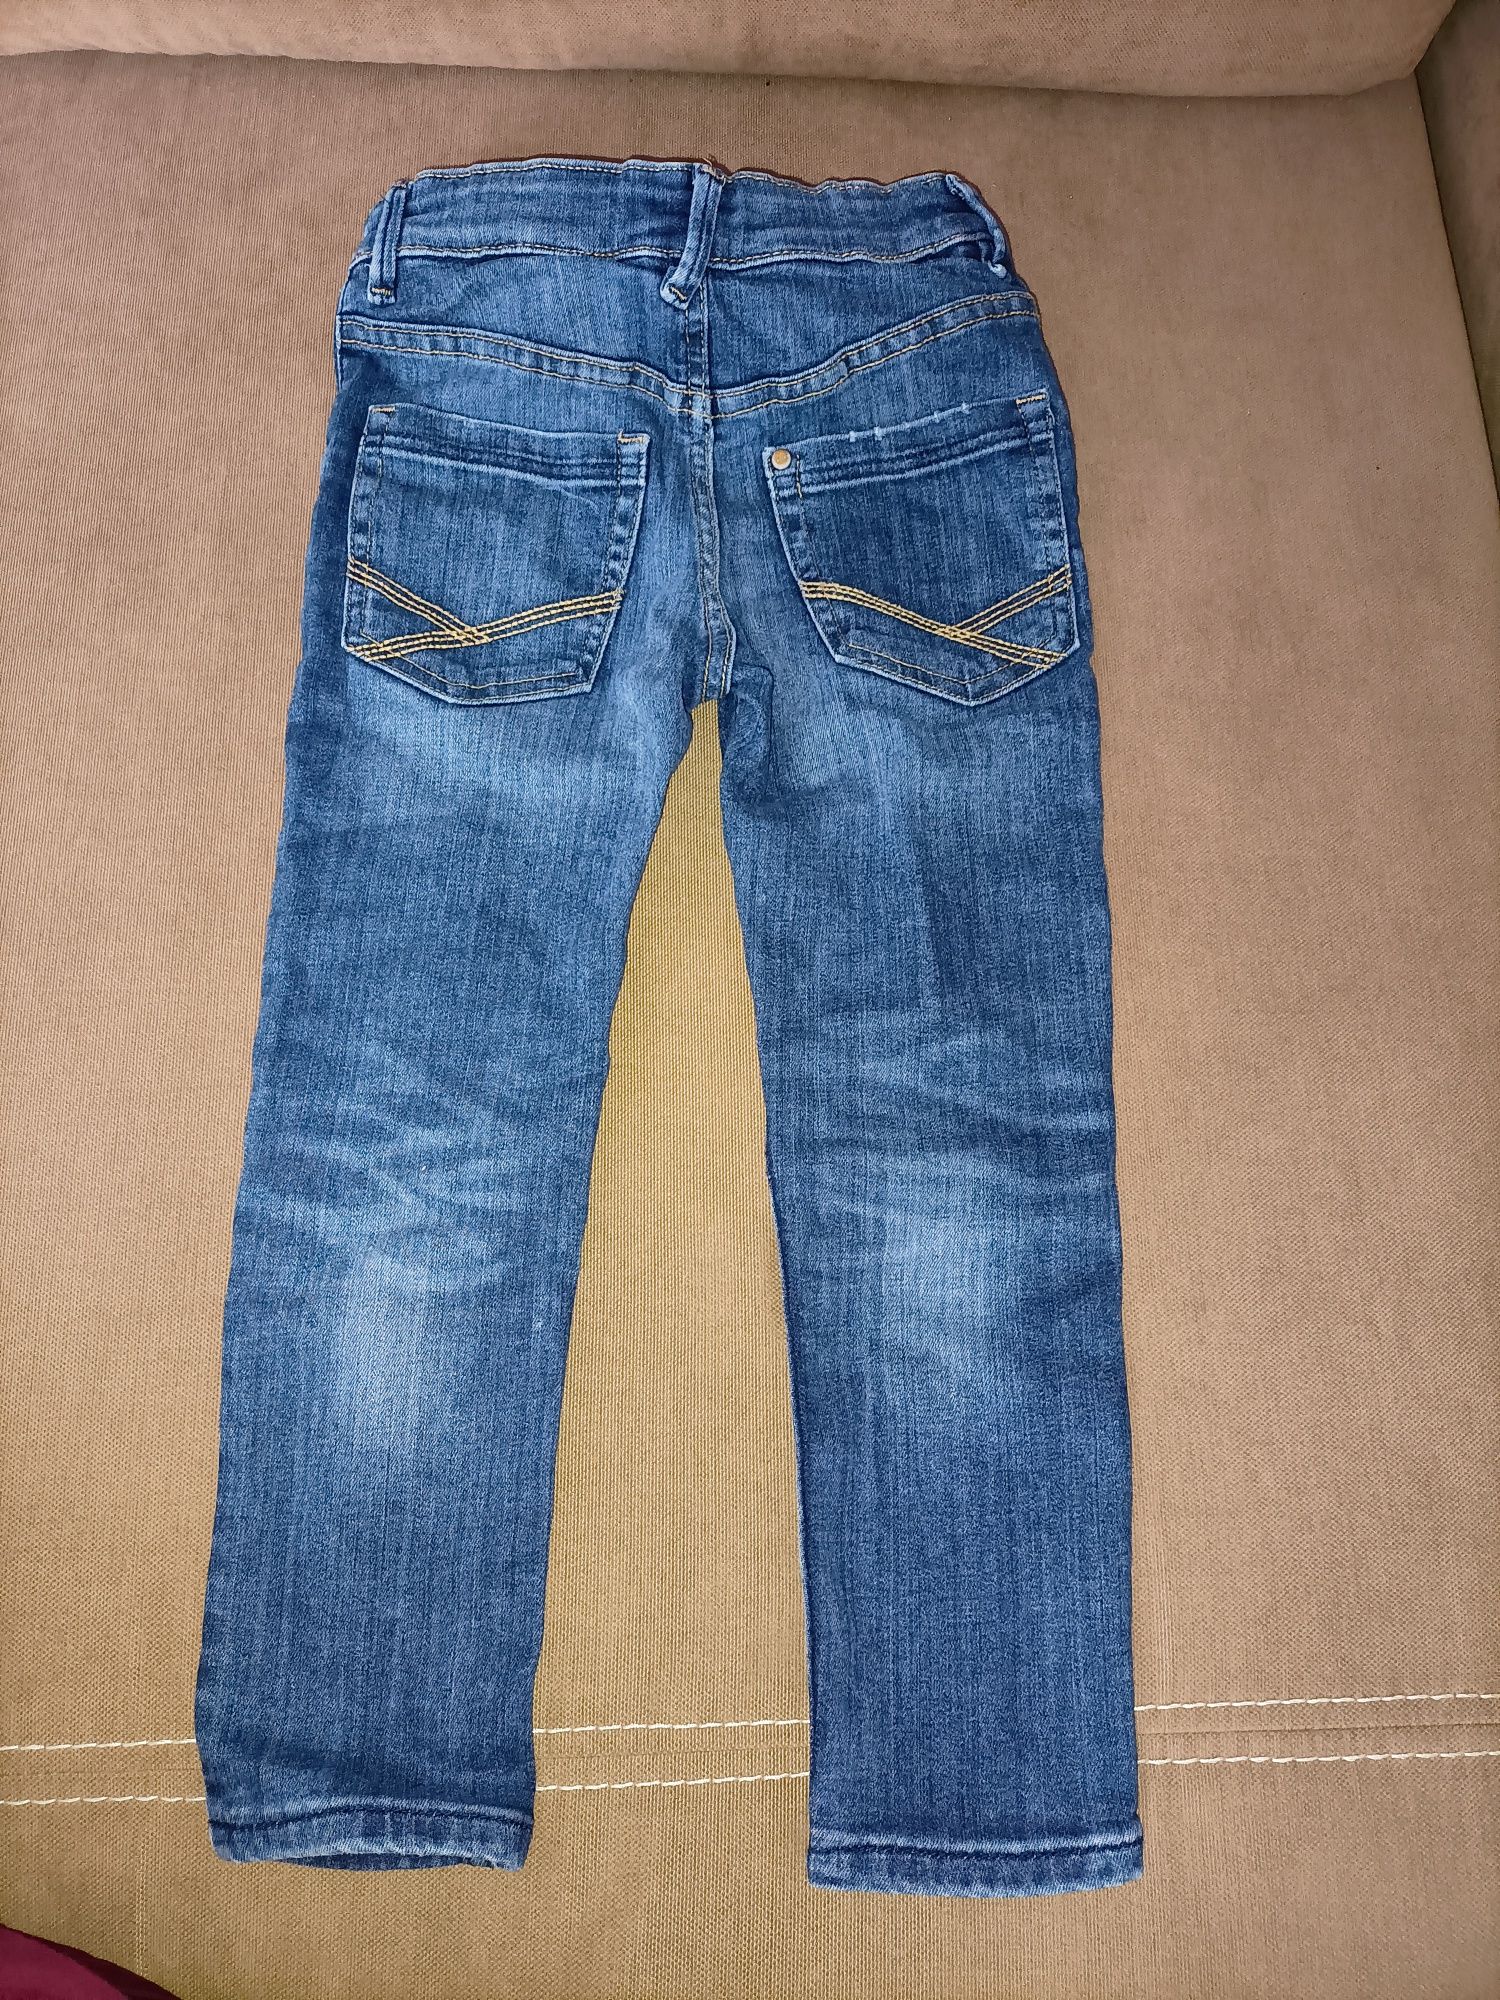 Spodnie jeansowe H&M 110